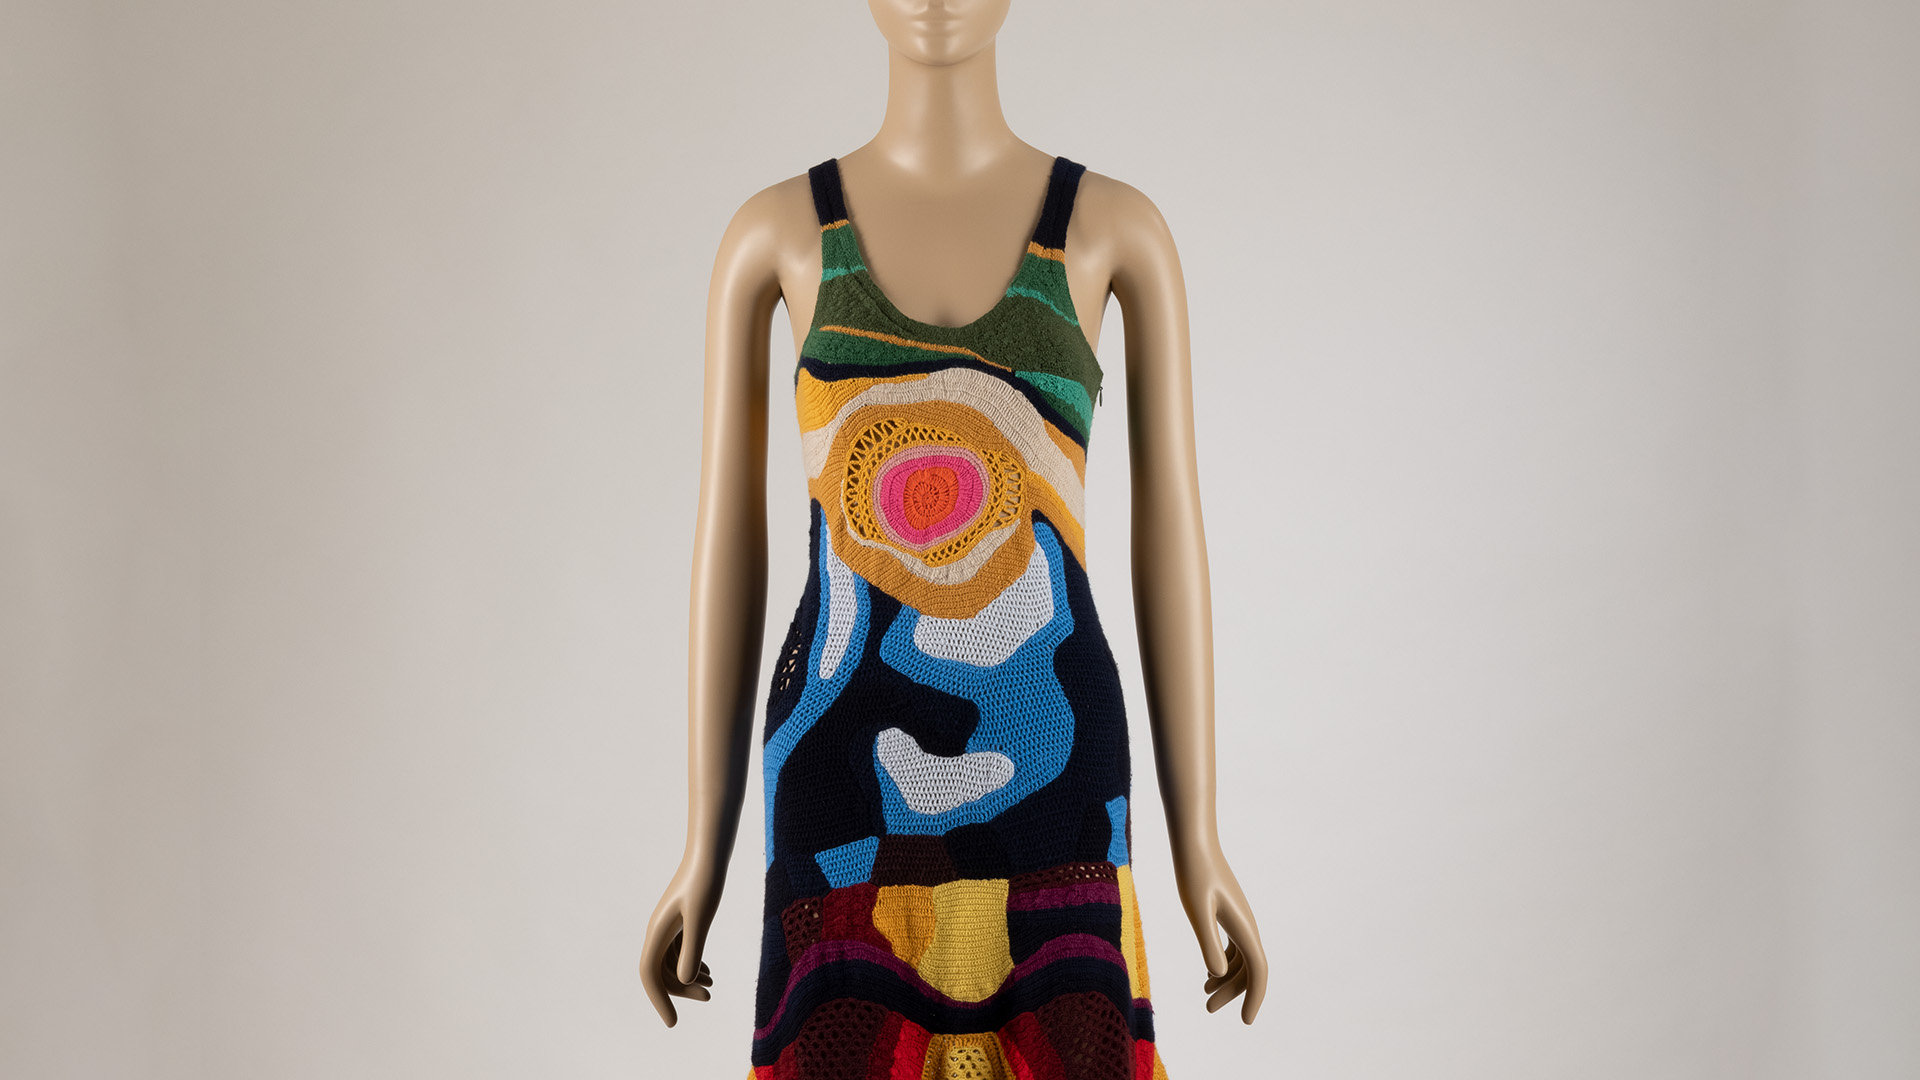 Maniquí vestido de un vestido de crochet largo sin mangas multicolor.